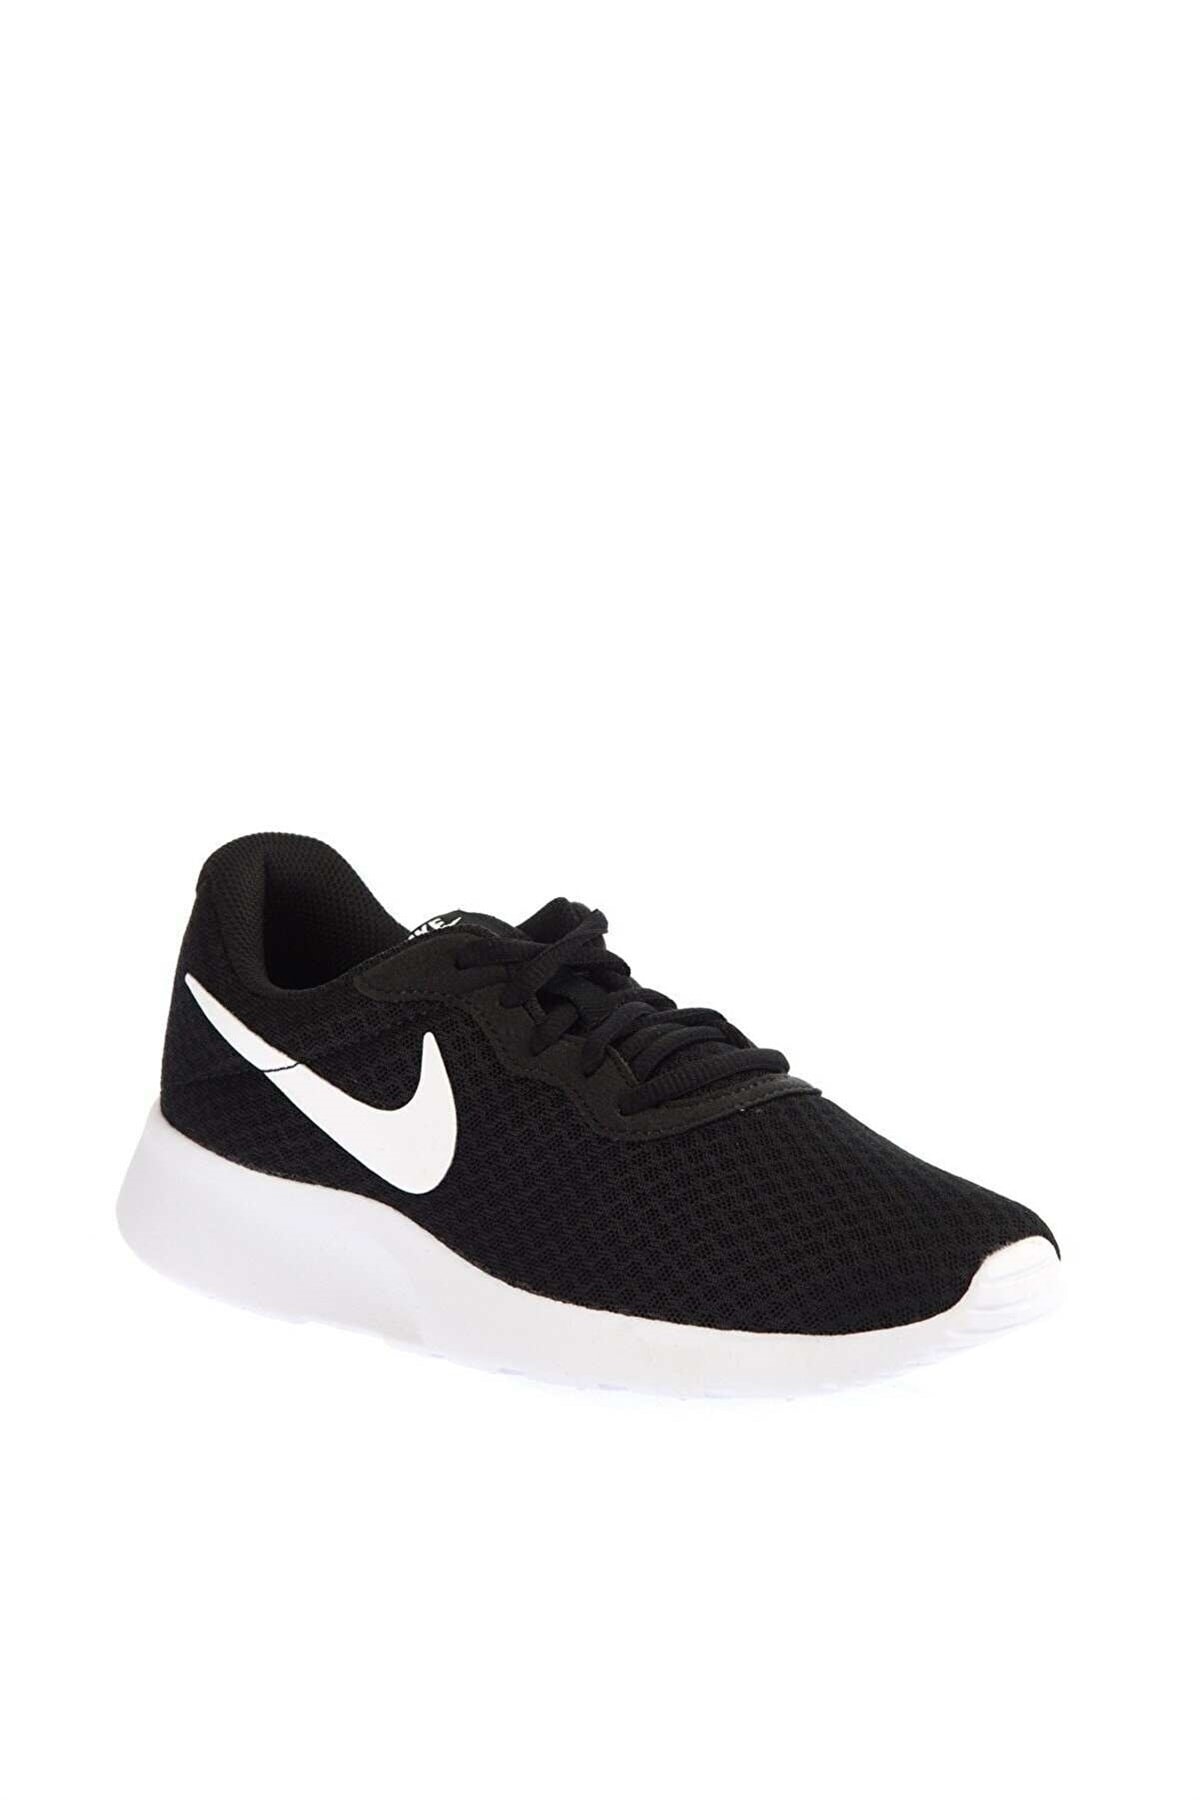 Nike Tanjun Unisex Koşu Ayakkabısı 812655-011